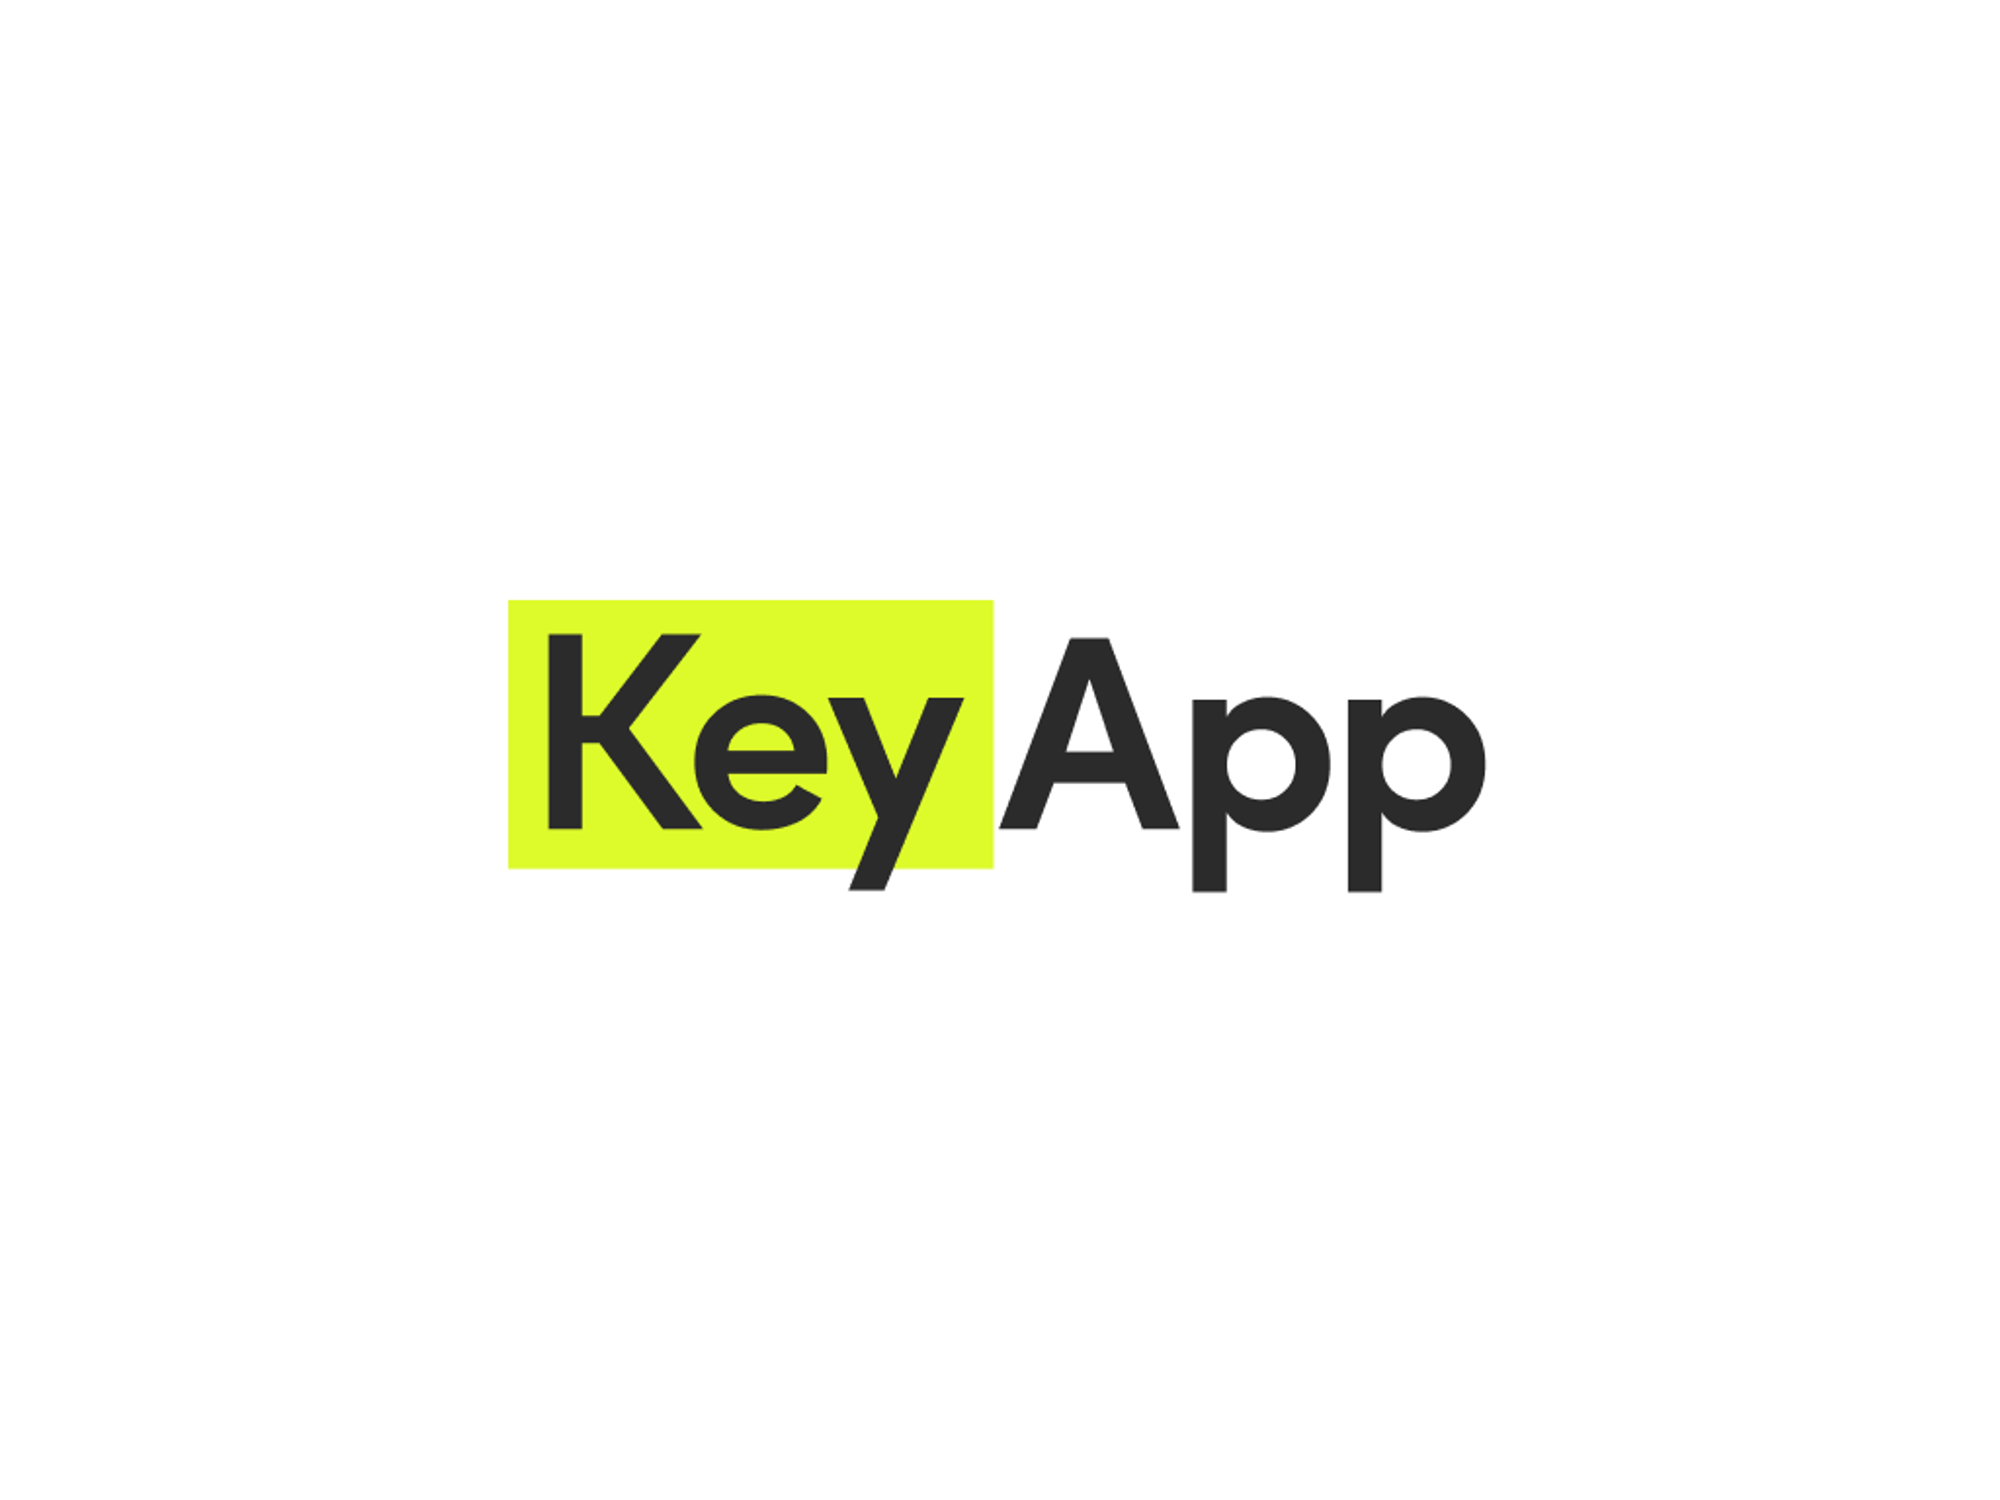 Key App